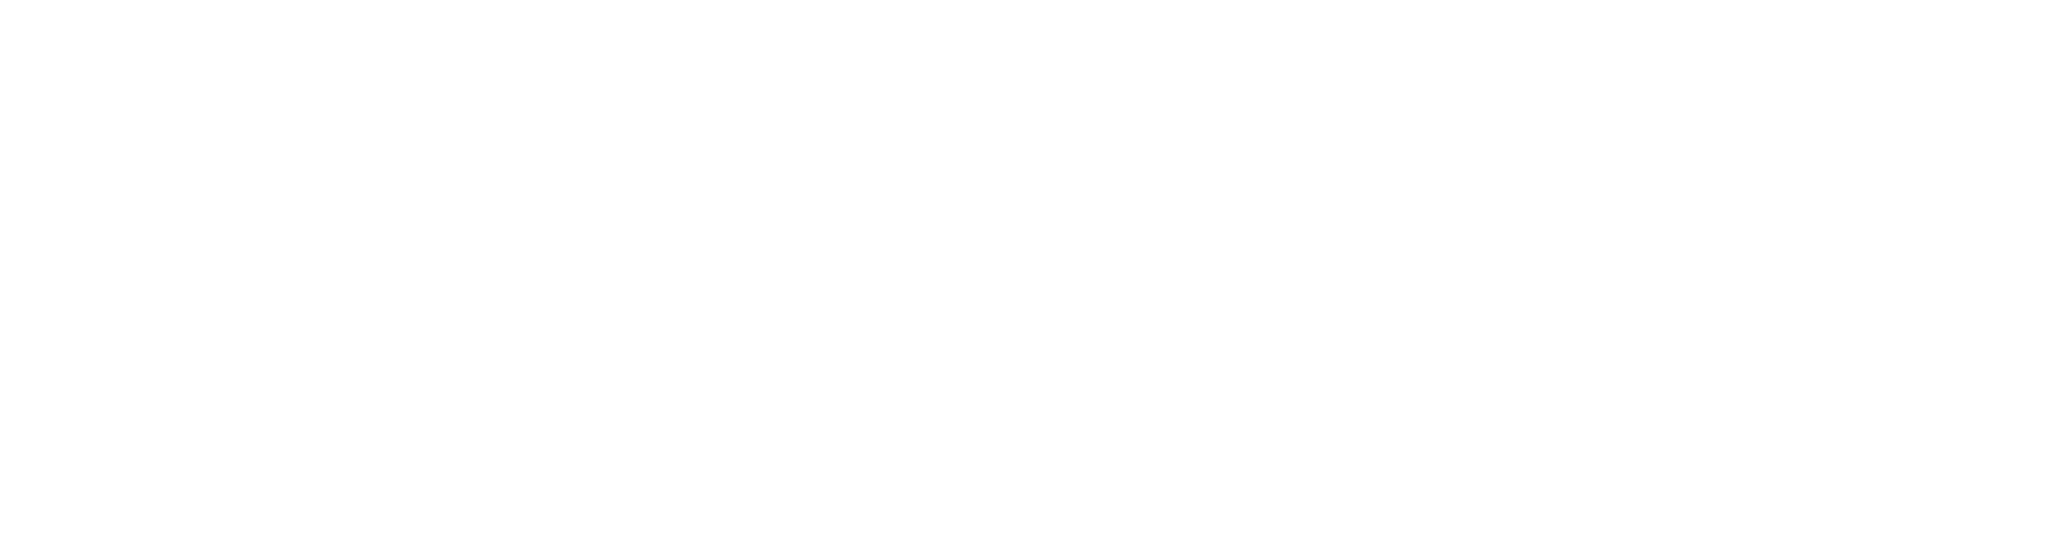 Nitro 505 logo